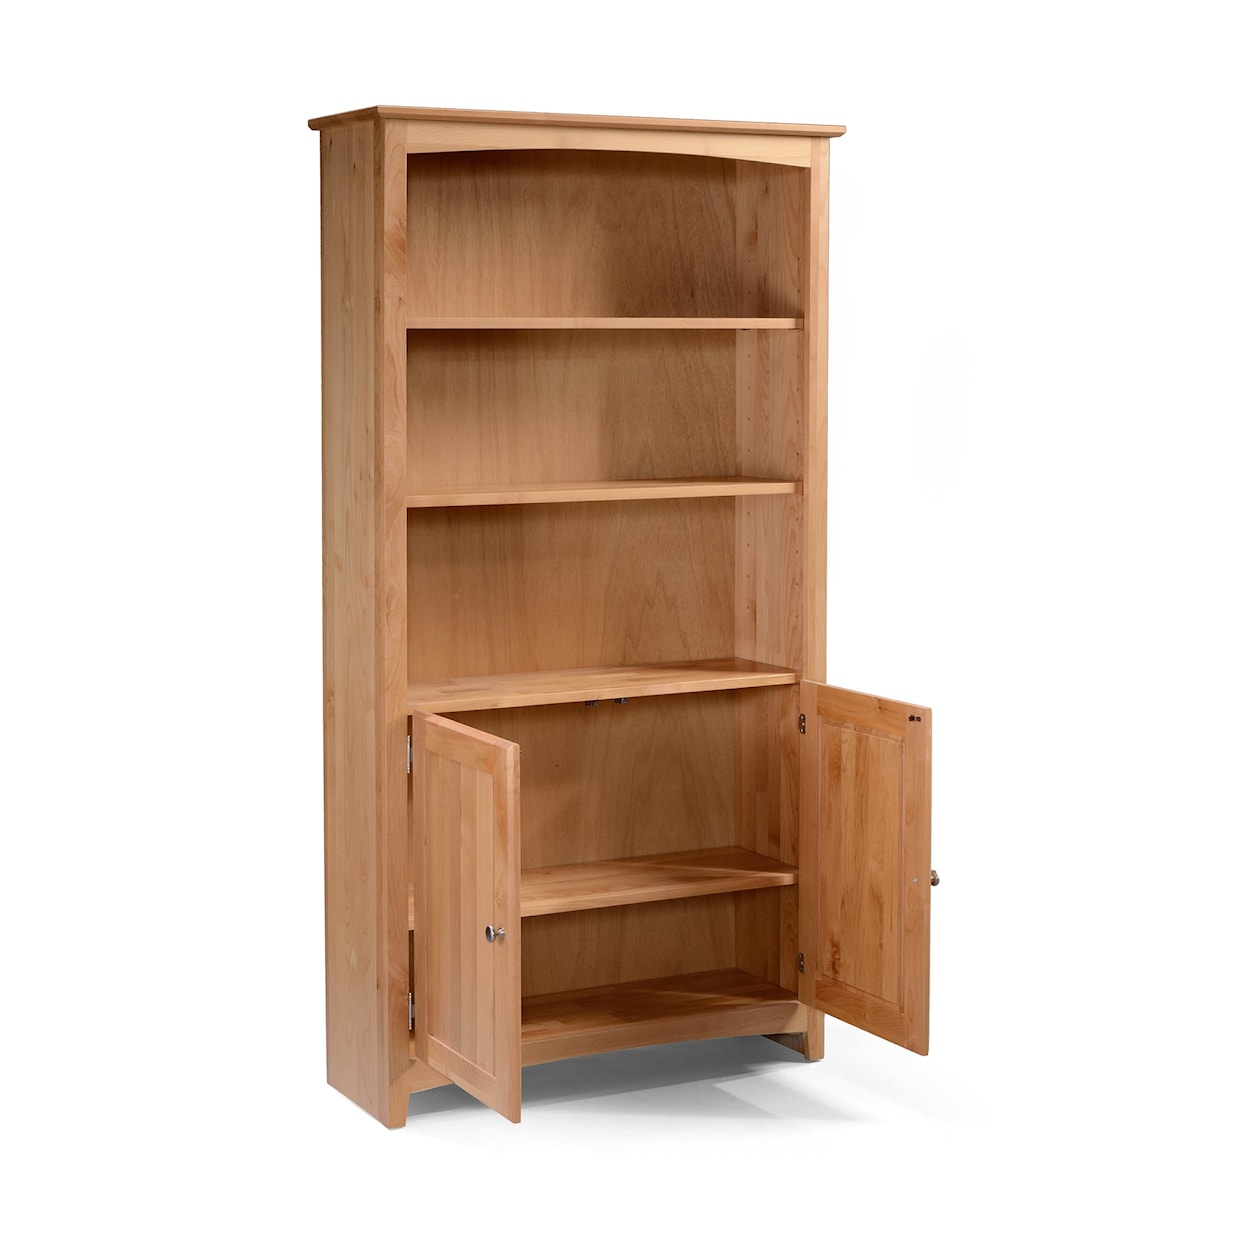 Archbold Furniture Alder Bookcases 72" Tall Bookcase